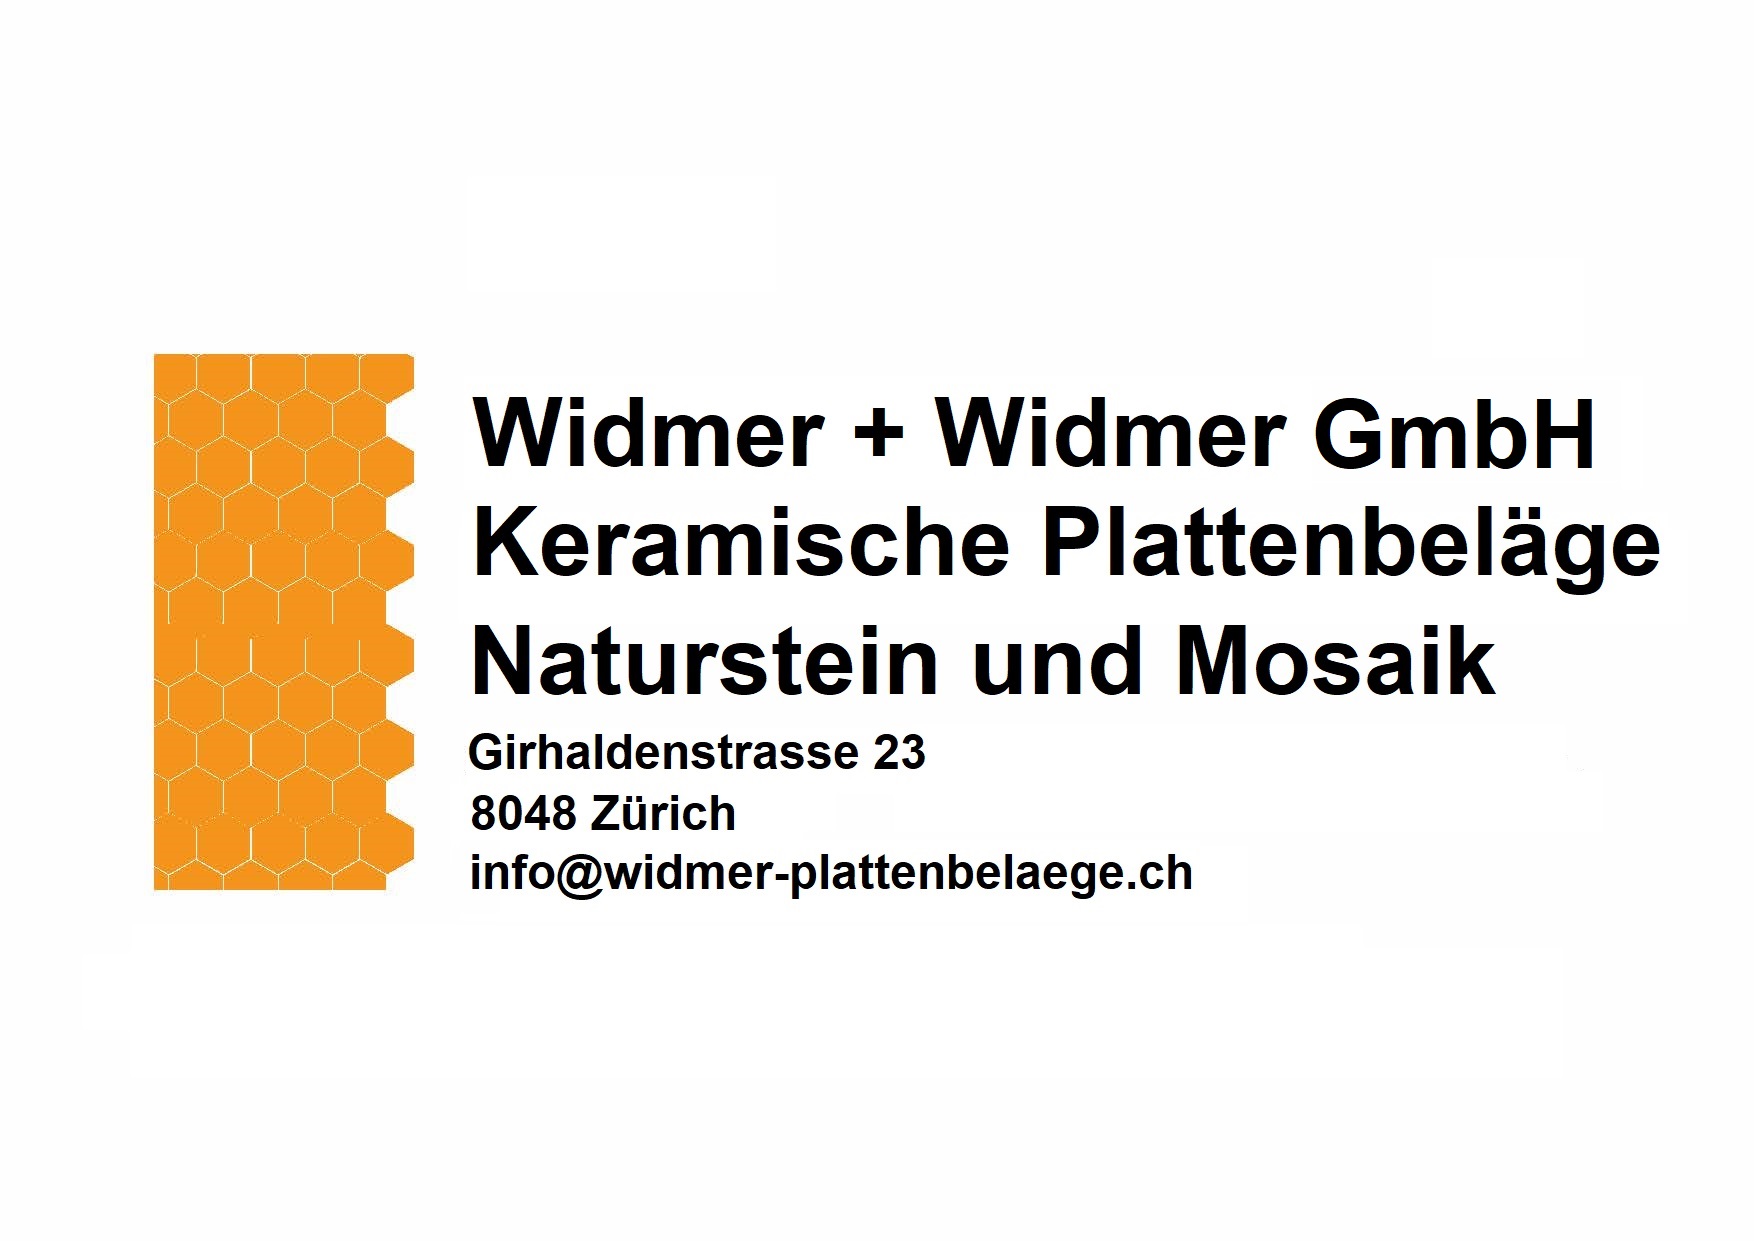 Widmer + Widmer GmbH